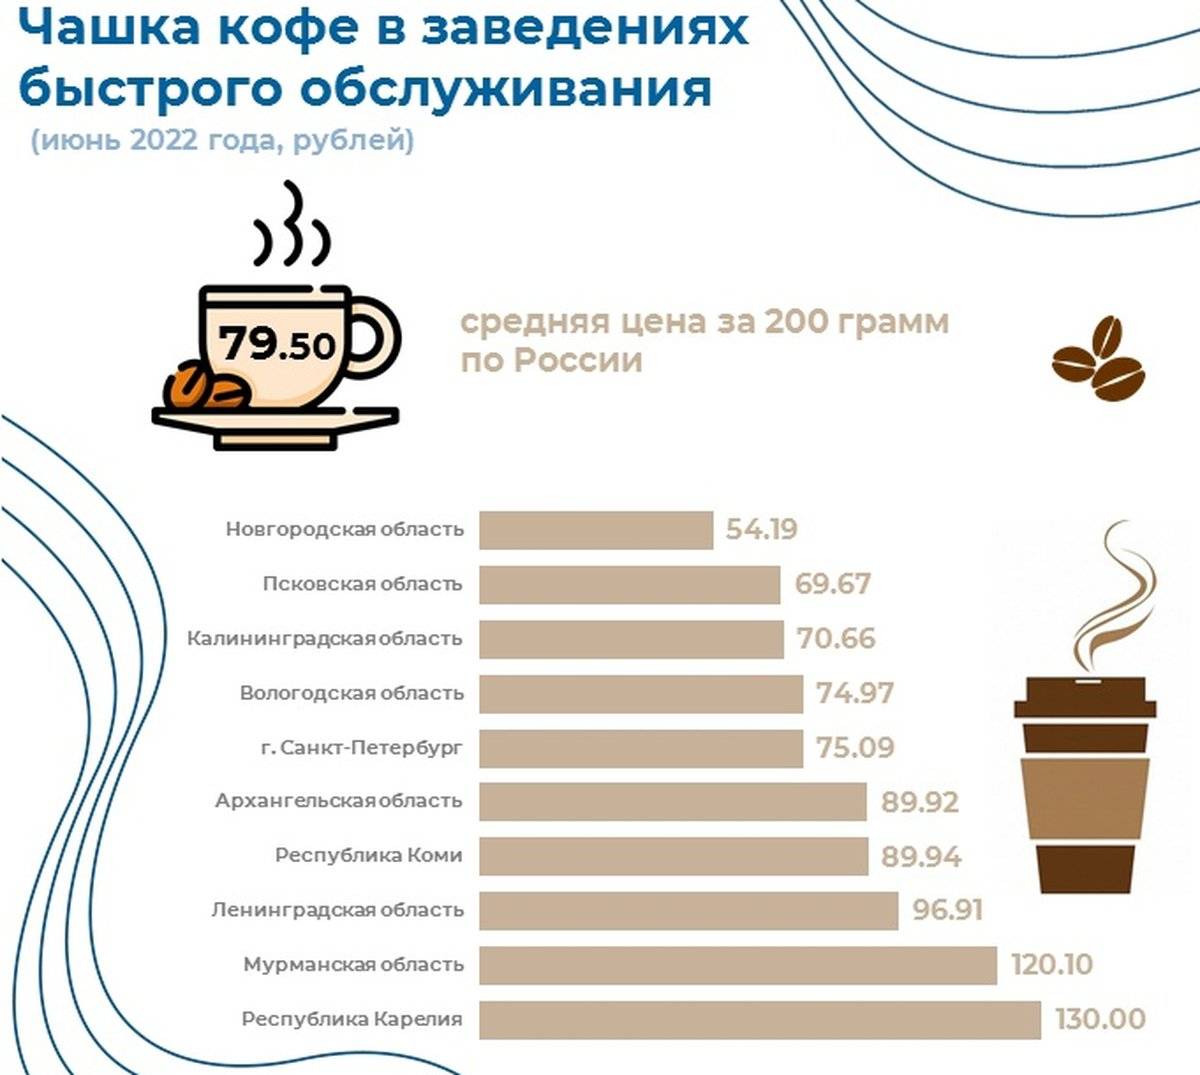 Дороже всего на Северо-Западе чашка кофе стоит в Карелии – 130 рублей.